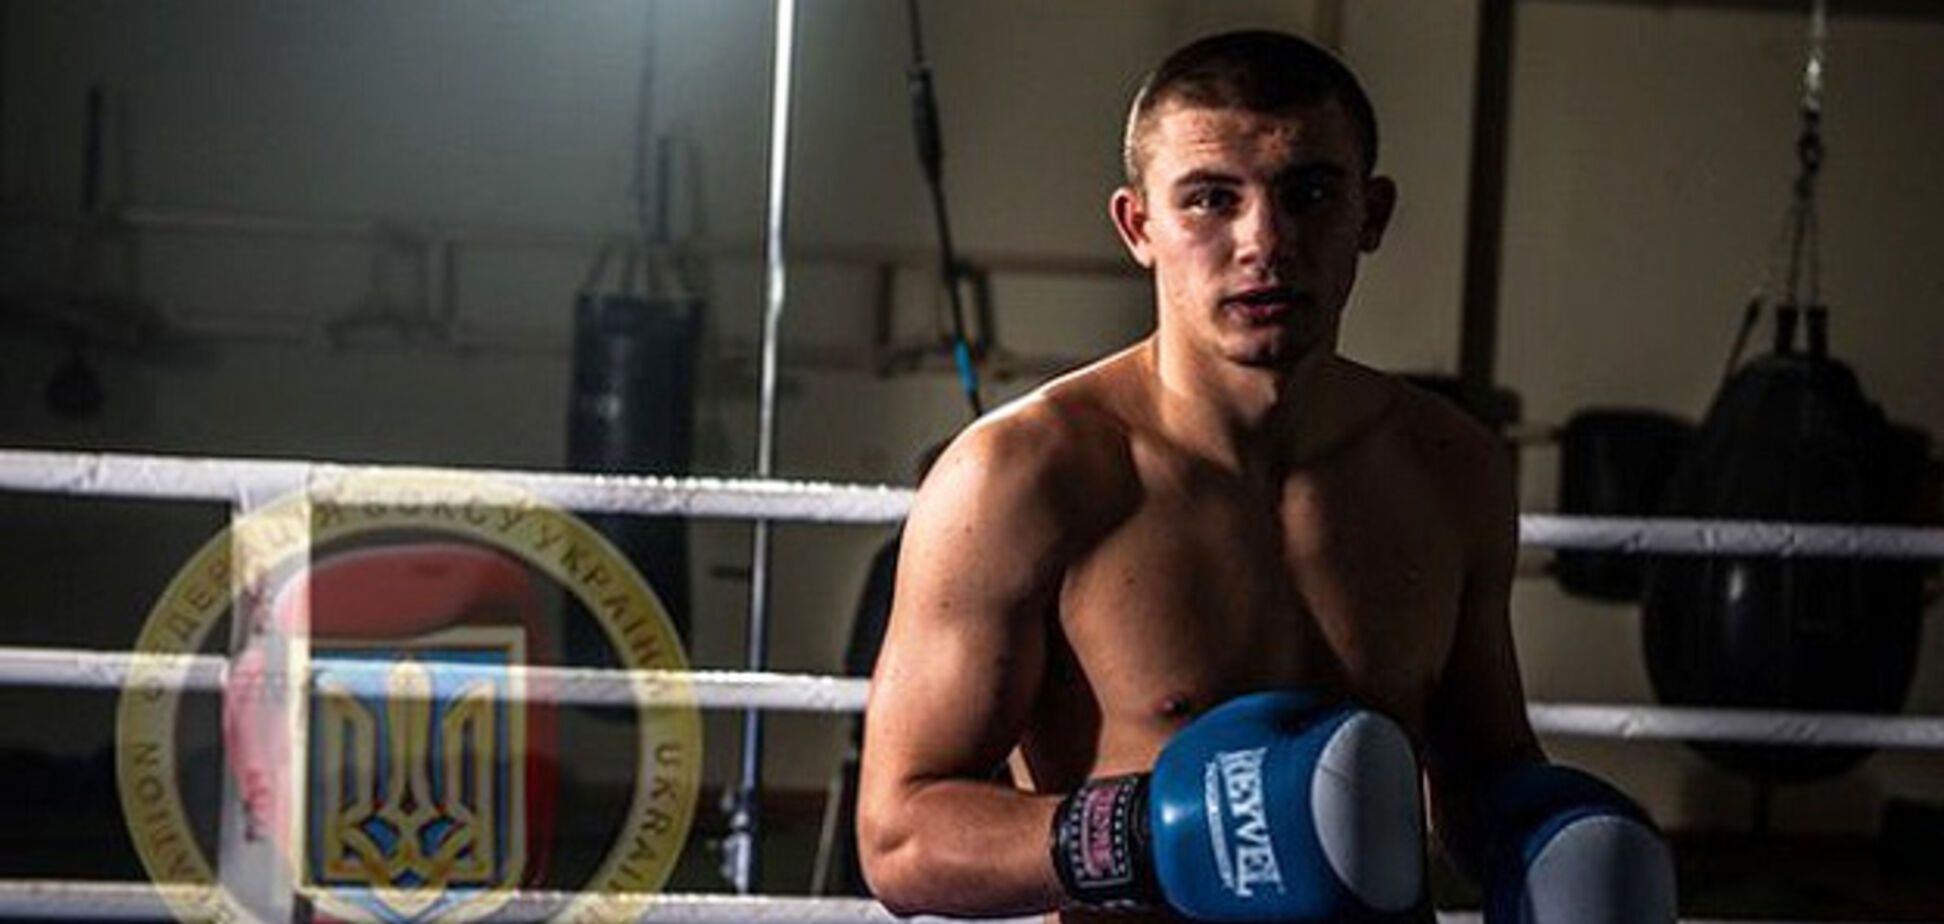 'Много комментариев': лучший боксер мира объяснил, почему выступил на украинском языке в Сочи